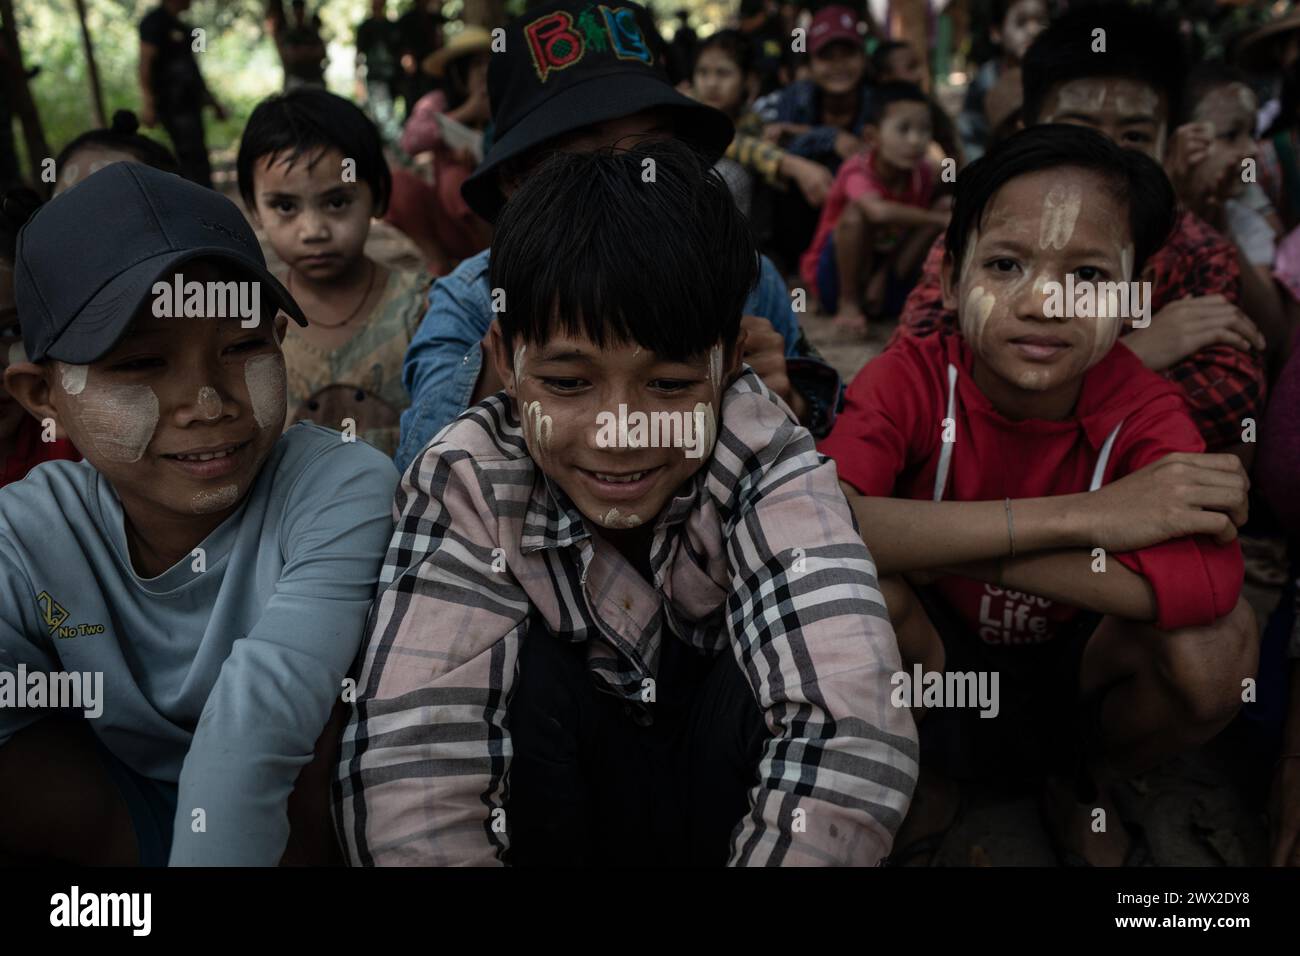 © Chris Huby/le Pictorium/MAXPPP - 06/01/2024 Chris Huby/le Pictorium - 06/01/2024 - Birmanie/Karen (regione) - Les FBR accueillent les centaines de deplaces sous des lieux caches et securise, a quelques kms du front et de l'armee birmane. CES gens sont sans maison, Blesses et meurtris. Les FBR leur font des spectacles, leur distribuent des vivres et de l'argent. Des Campements de refugies aux Villages bombardes, rencontre avec une population martyrisee par la junte et decouverte de l'action humanitaire des FBR. La Birmanie continue sa descente aux enfers depuis trois ans, dans Foto Stock